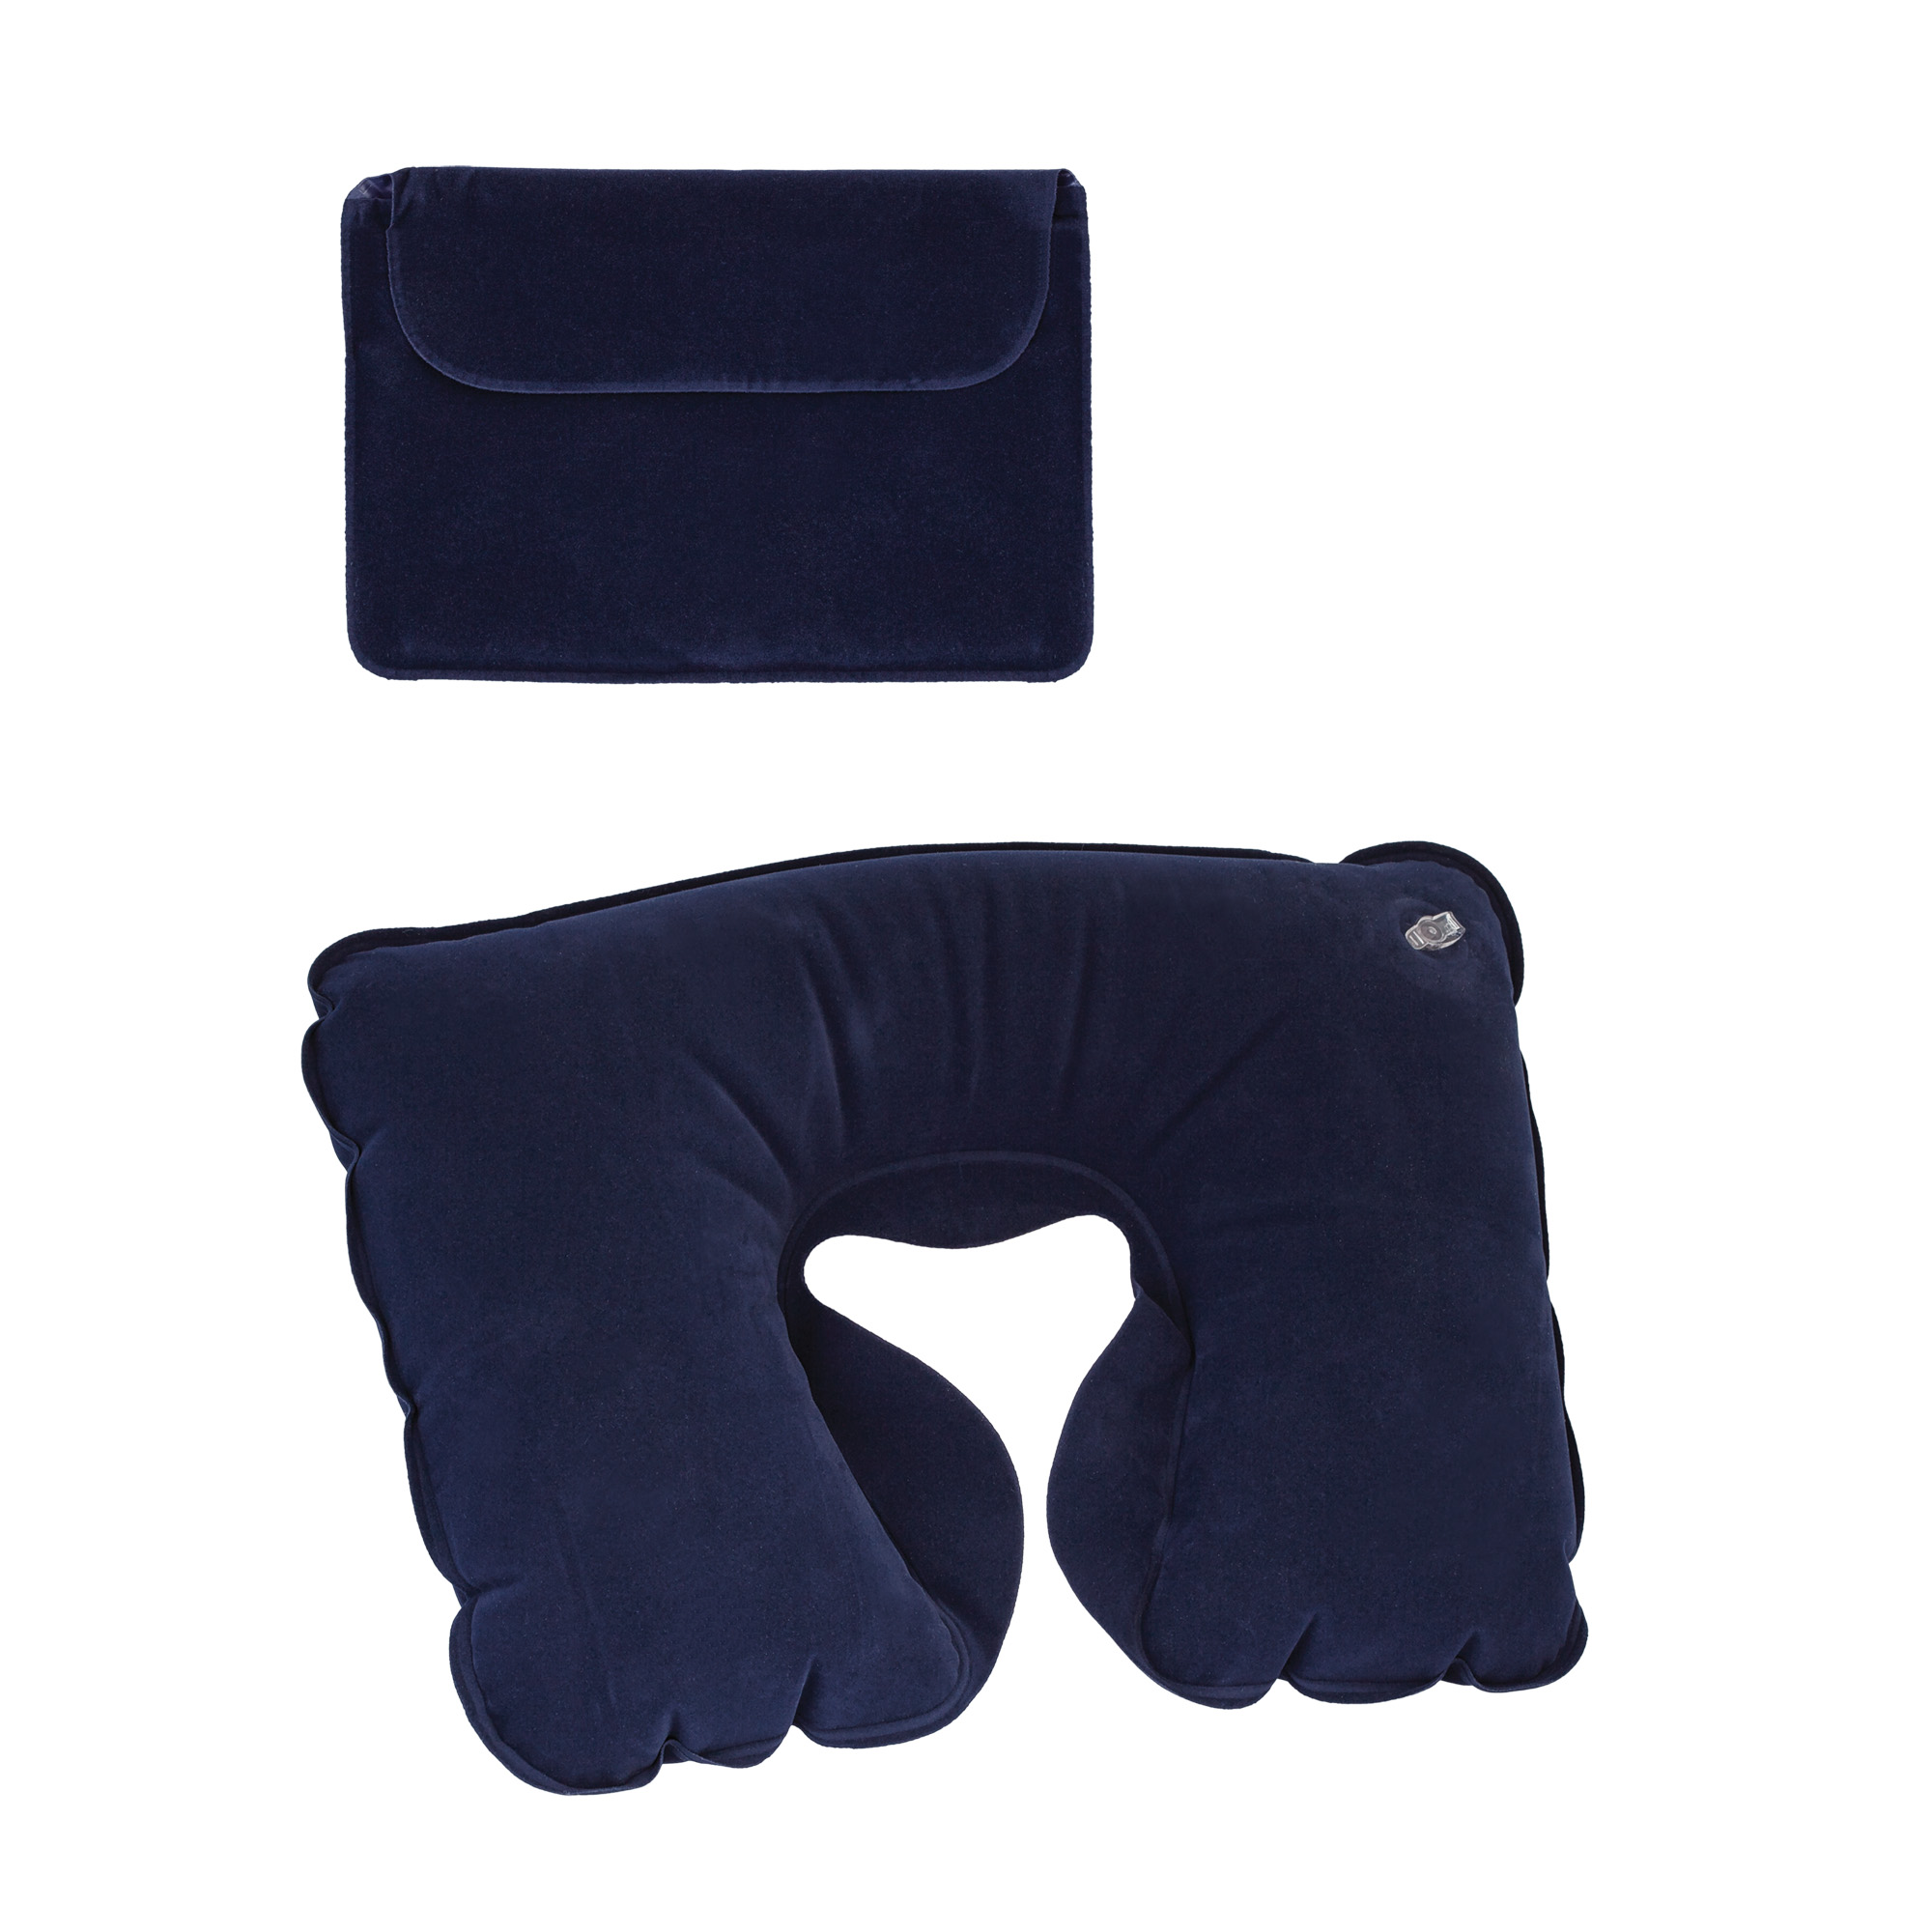 Подушка "Путешественник" надувная в чехле синий